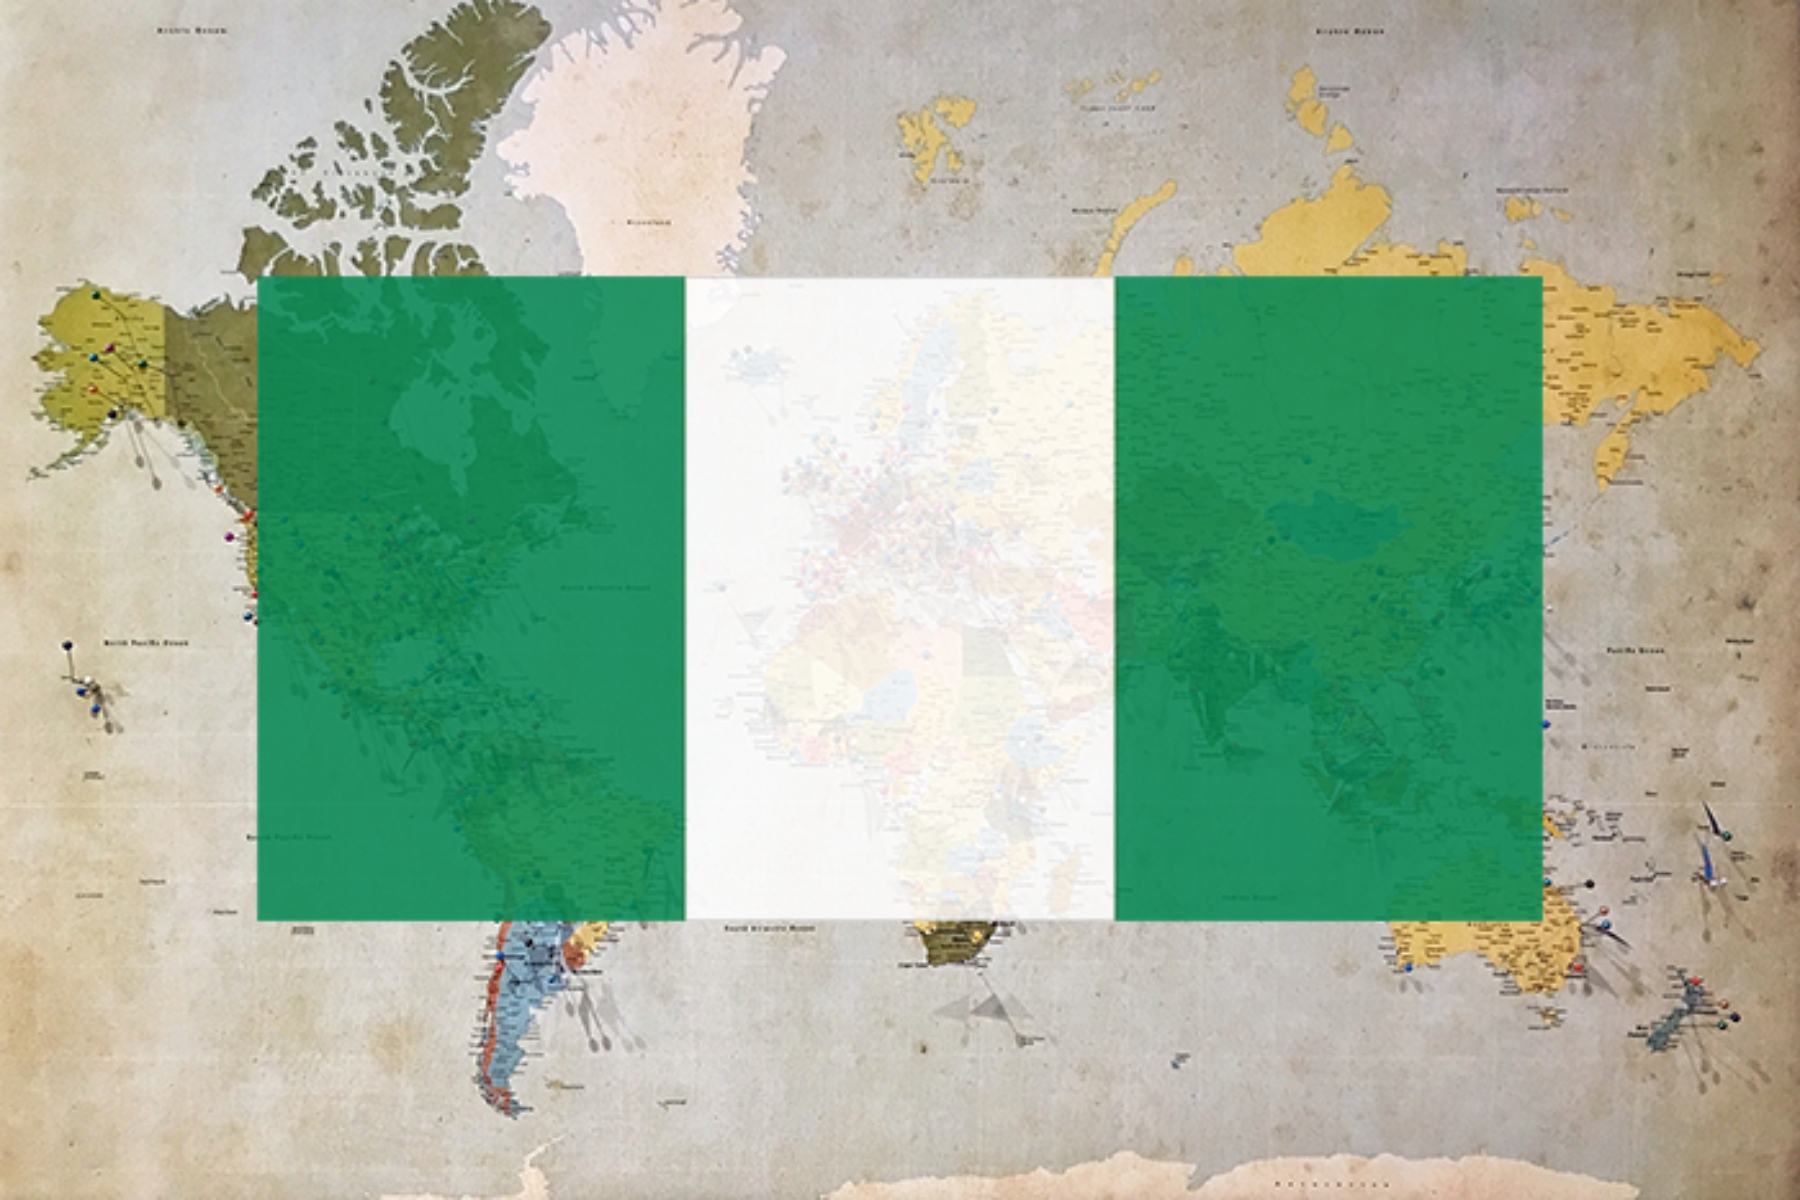 Ιλαρά: Τουλάχιστον 42 ανθρώποι πέθαναν στη βορειοανατολική Νιγηρία